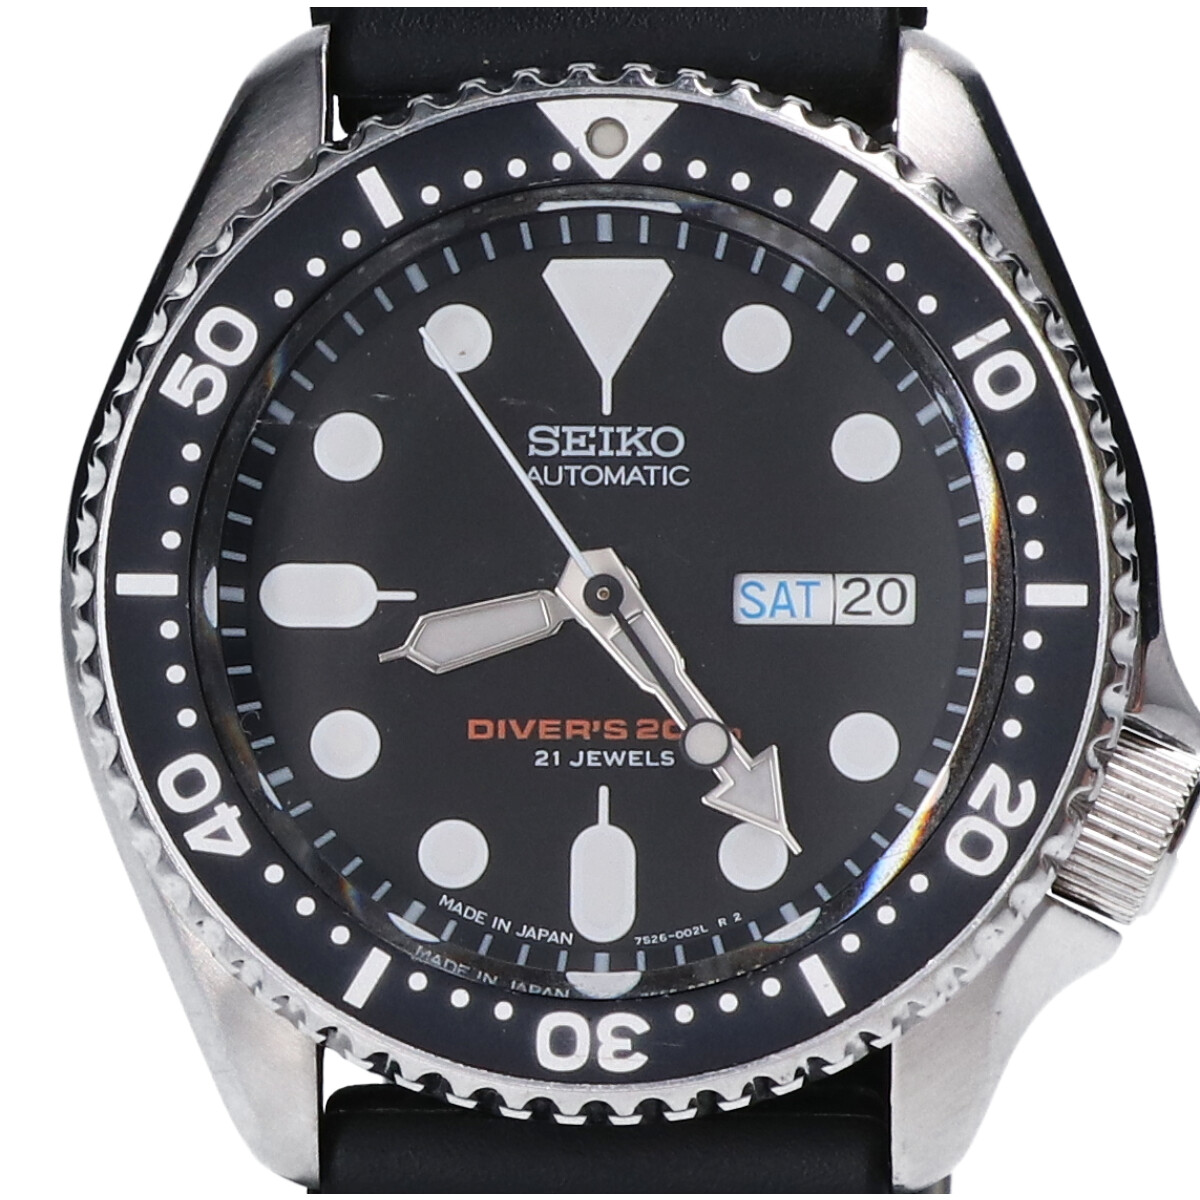 セイコーの7S26-0020 SCUBA DIVER’S スキューバダイバーズ ねじ込み式竜頭 自動巻き腕時計の買取実績です。